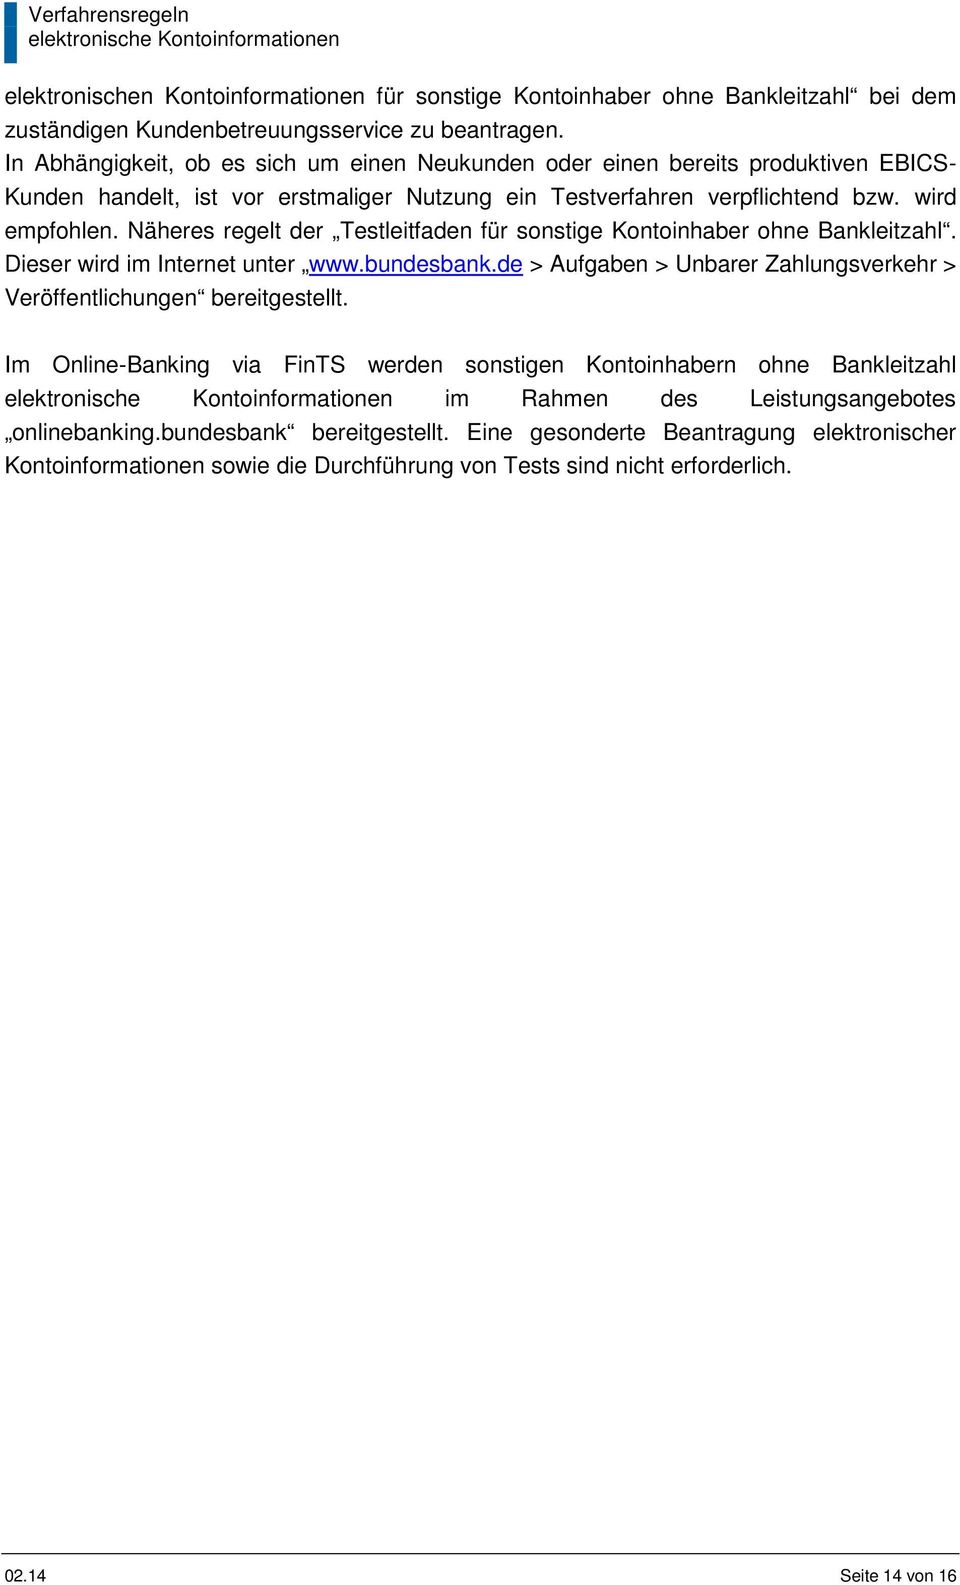 Näheres regelt der Testleitfaden für sonstige Kontoinhaber ohne Bankleitzahl. Dieser wird im Internet unter www.bundesbank.de > Aufgaben > Unbarer Zahlungsverkehr > Veröffentlichungen bereitgestellt.